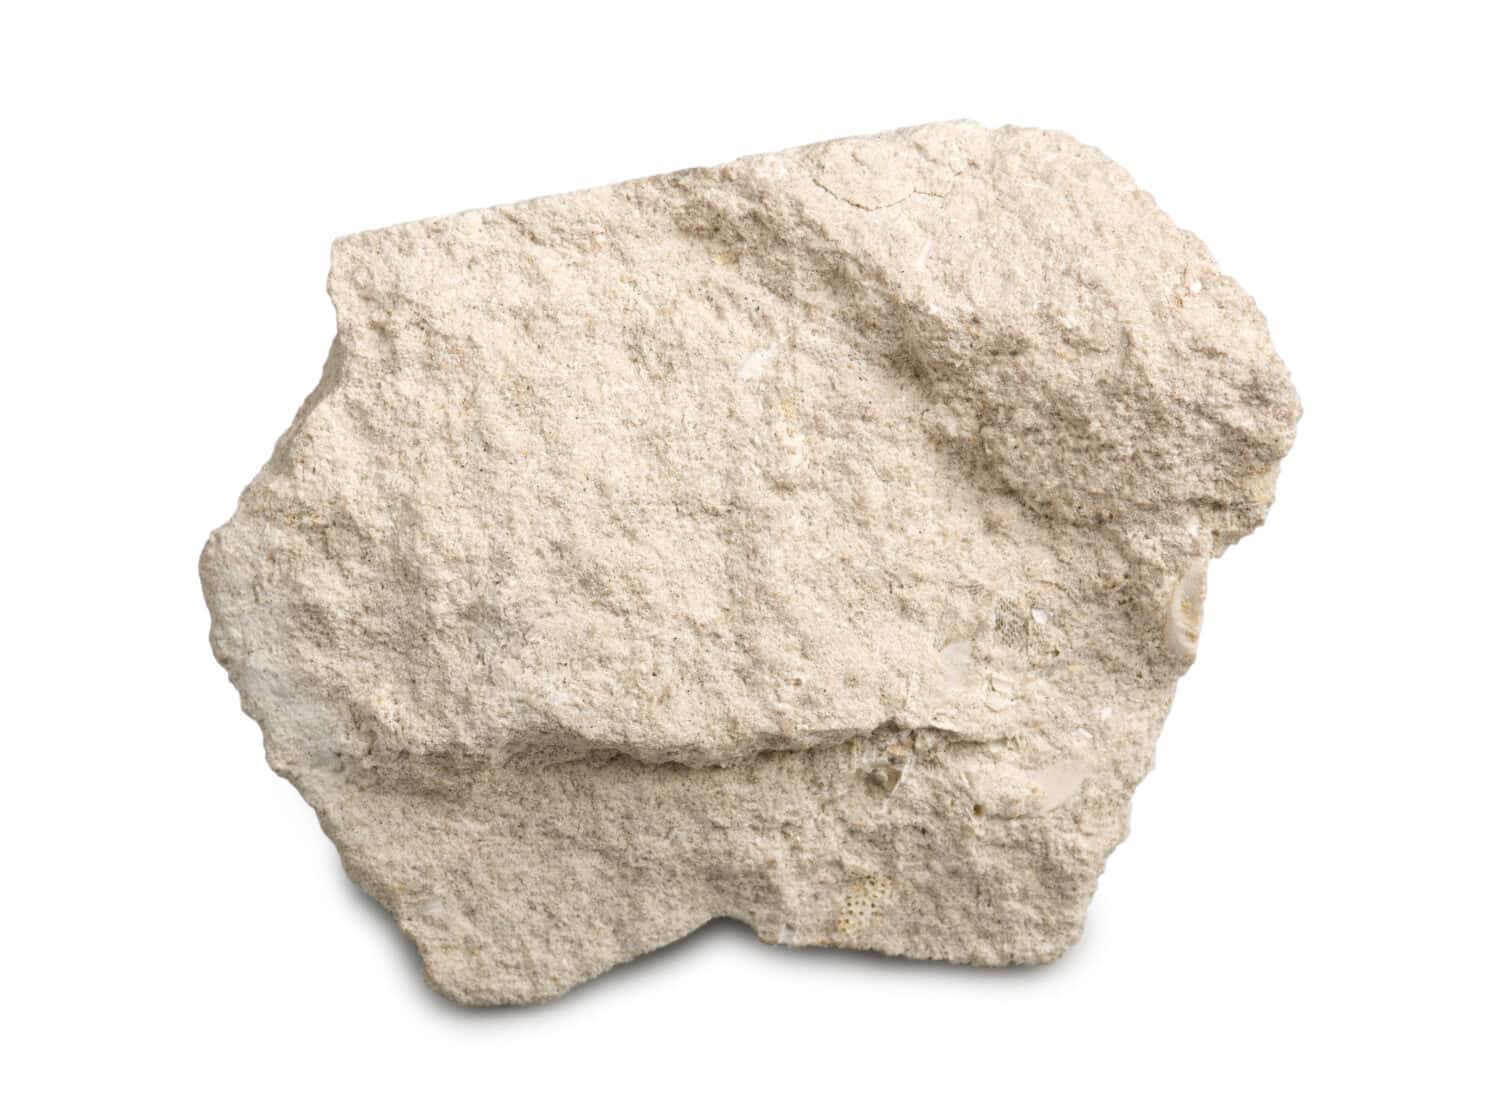 Calcare isolato su sfondo bianco.  Il calcare è una roccia sedimentaria composta da frammenti scheletrici di organismi marini.